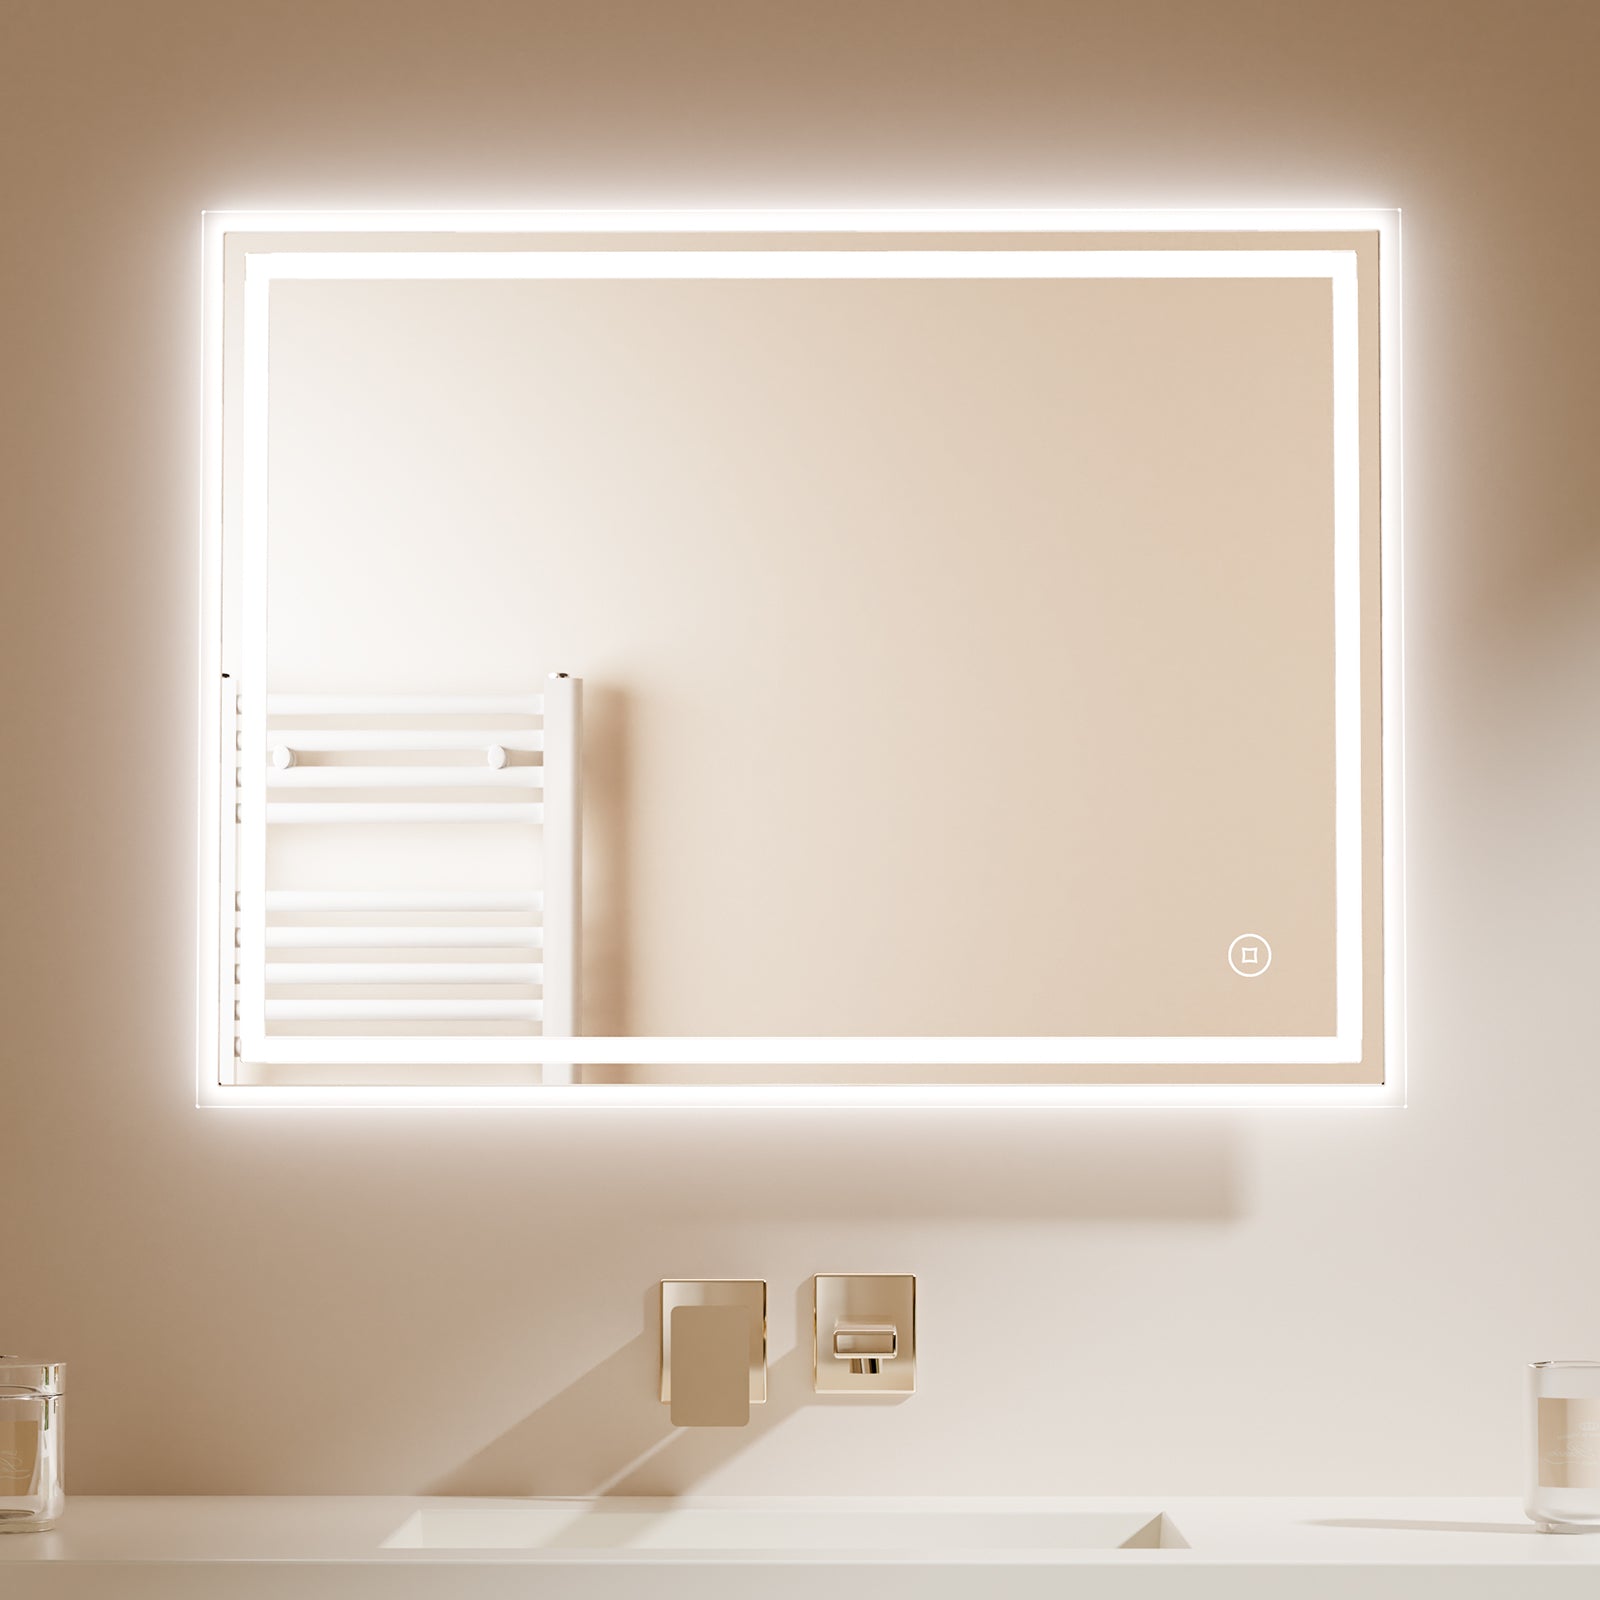 EMKE Badspiegel „LeeMi Ω Pro“ 60*80cm mit LED Beleuchtung und Touch Schalter, 3 Lichtfarben, Anti-Fog Funktion